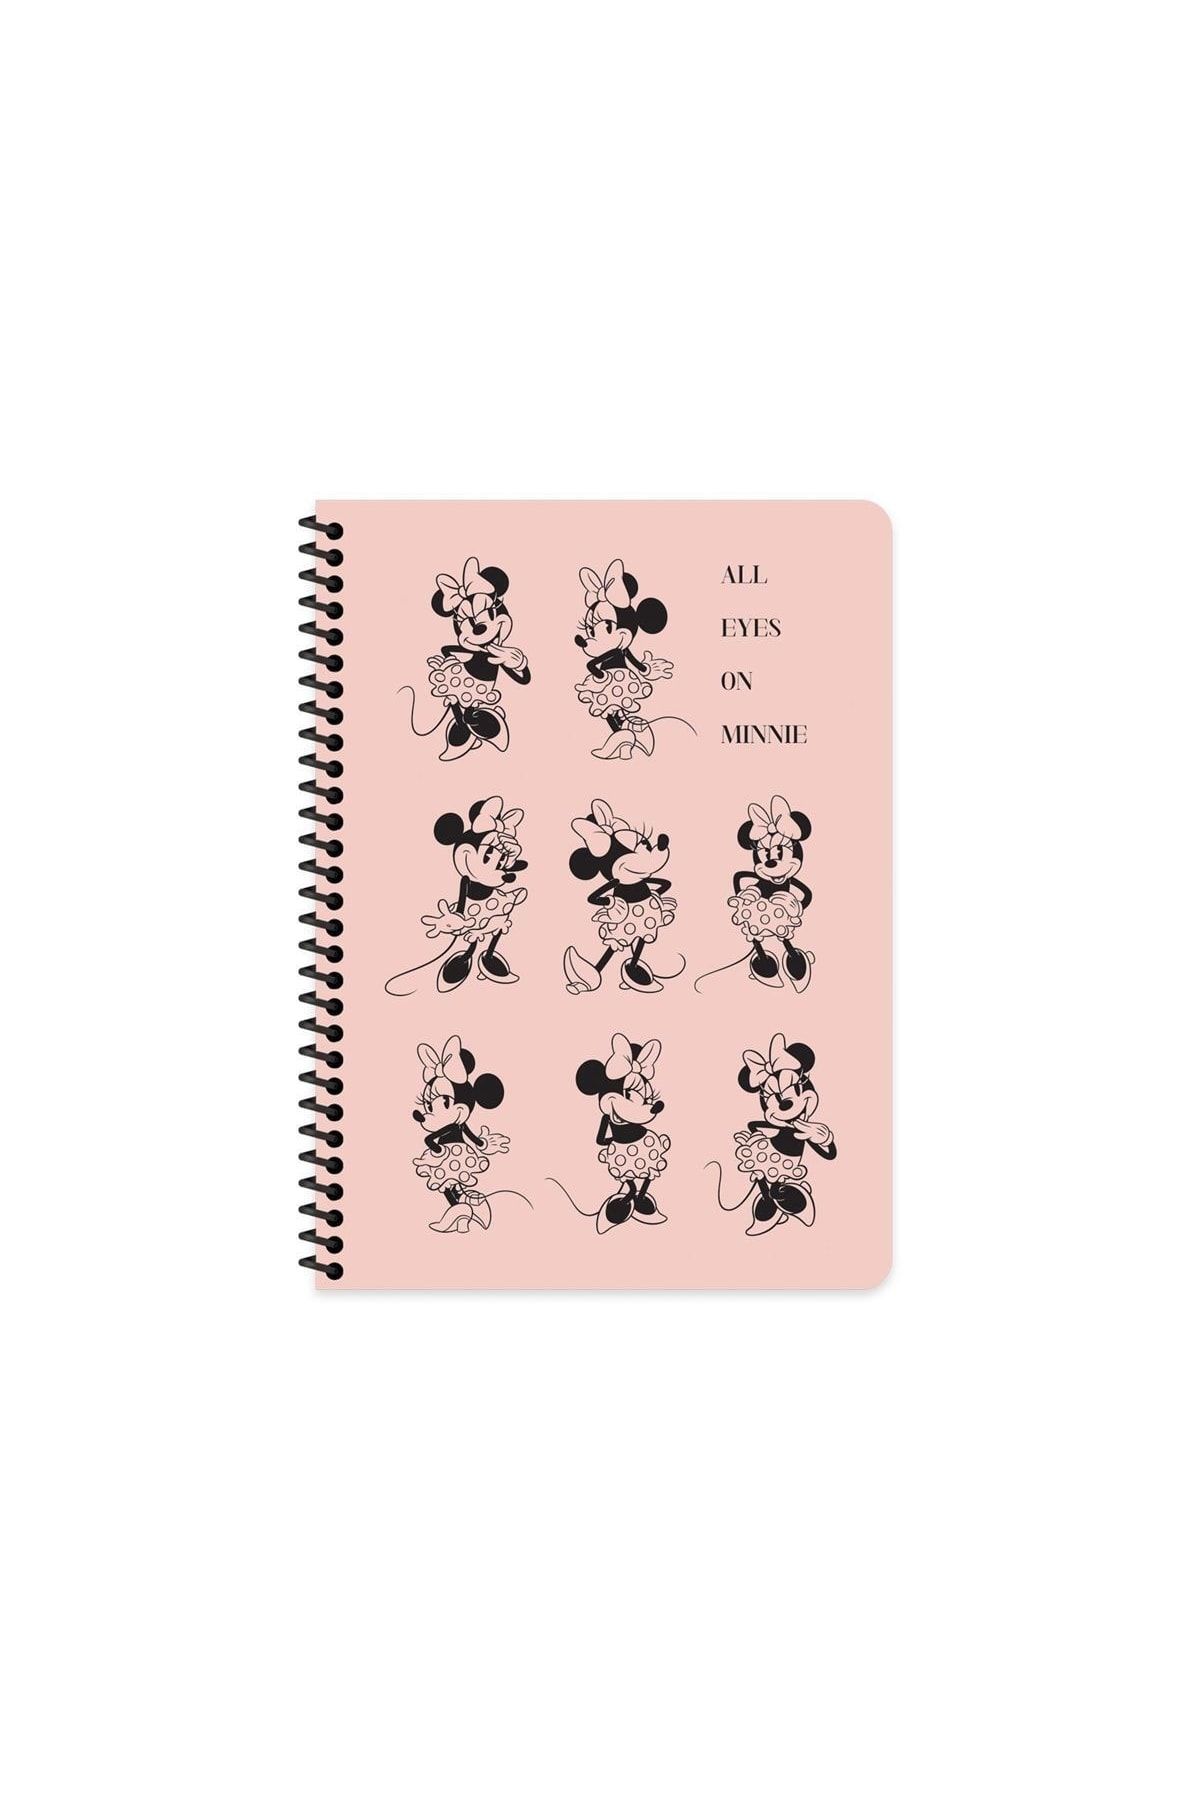 Keskin Color Mickey Mouse 20x28 Cm Çizgisiz 80 Yaprak Telli Defter Karton Kapak 60 Gr Beyaz Kağıt